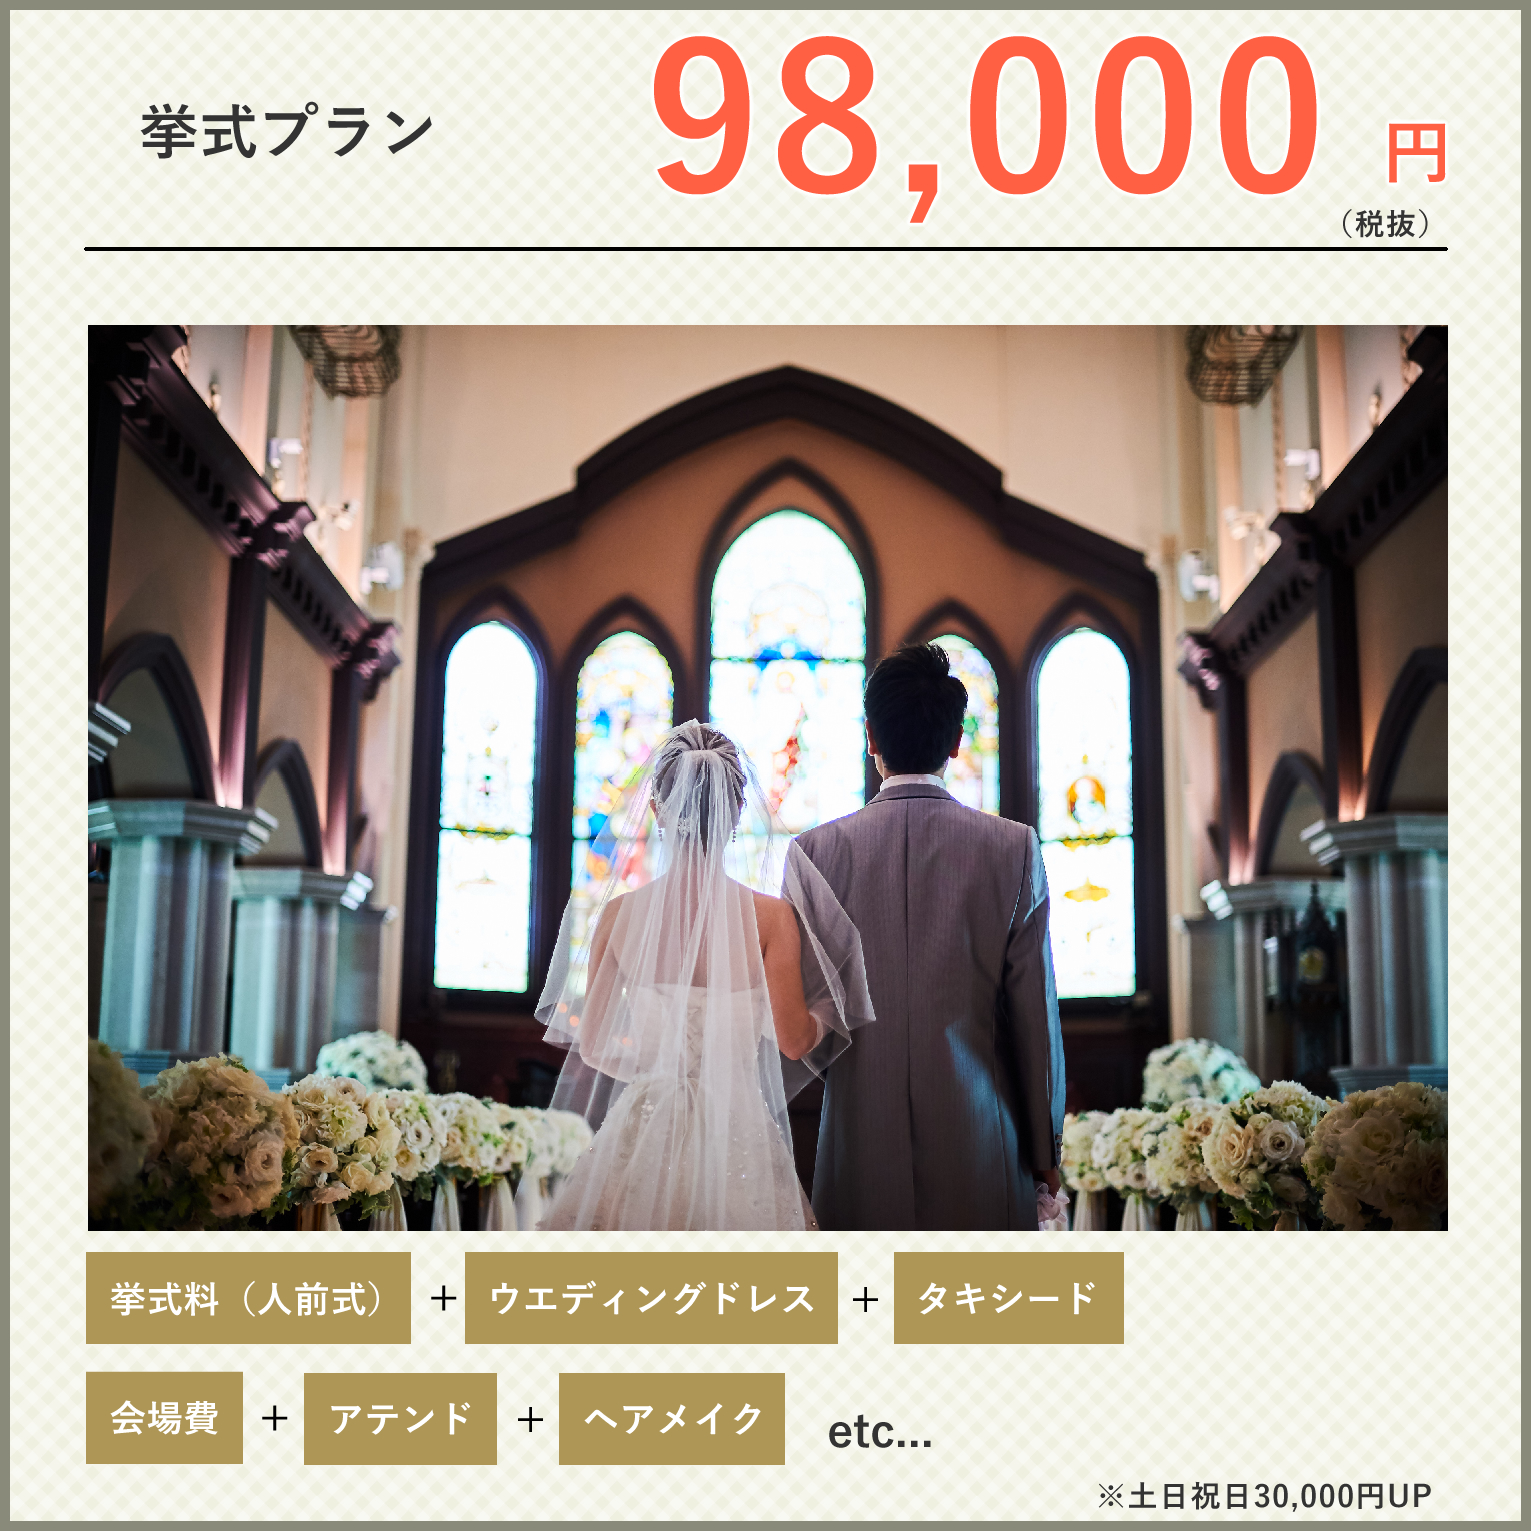 1 5次会 ウェディングパーティ 九州 熊本で結婚式 ウェディングパーティ ウェディングプロデュースならプリマ